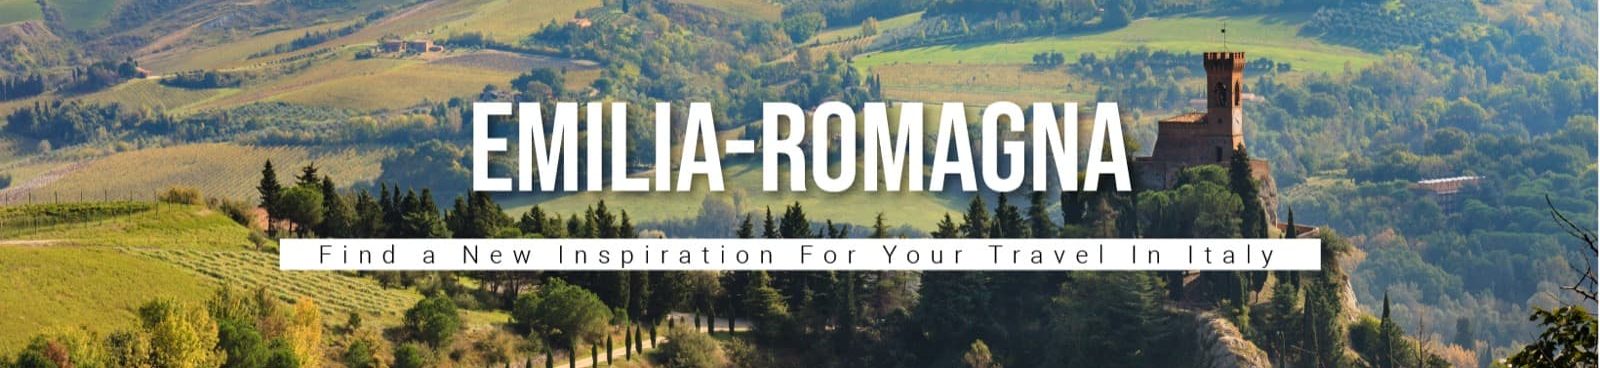 Privato: 5 divertenti itinerari per scoprire l’Emilia Romagna